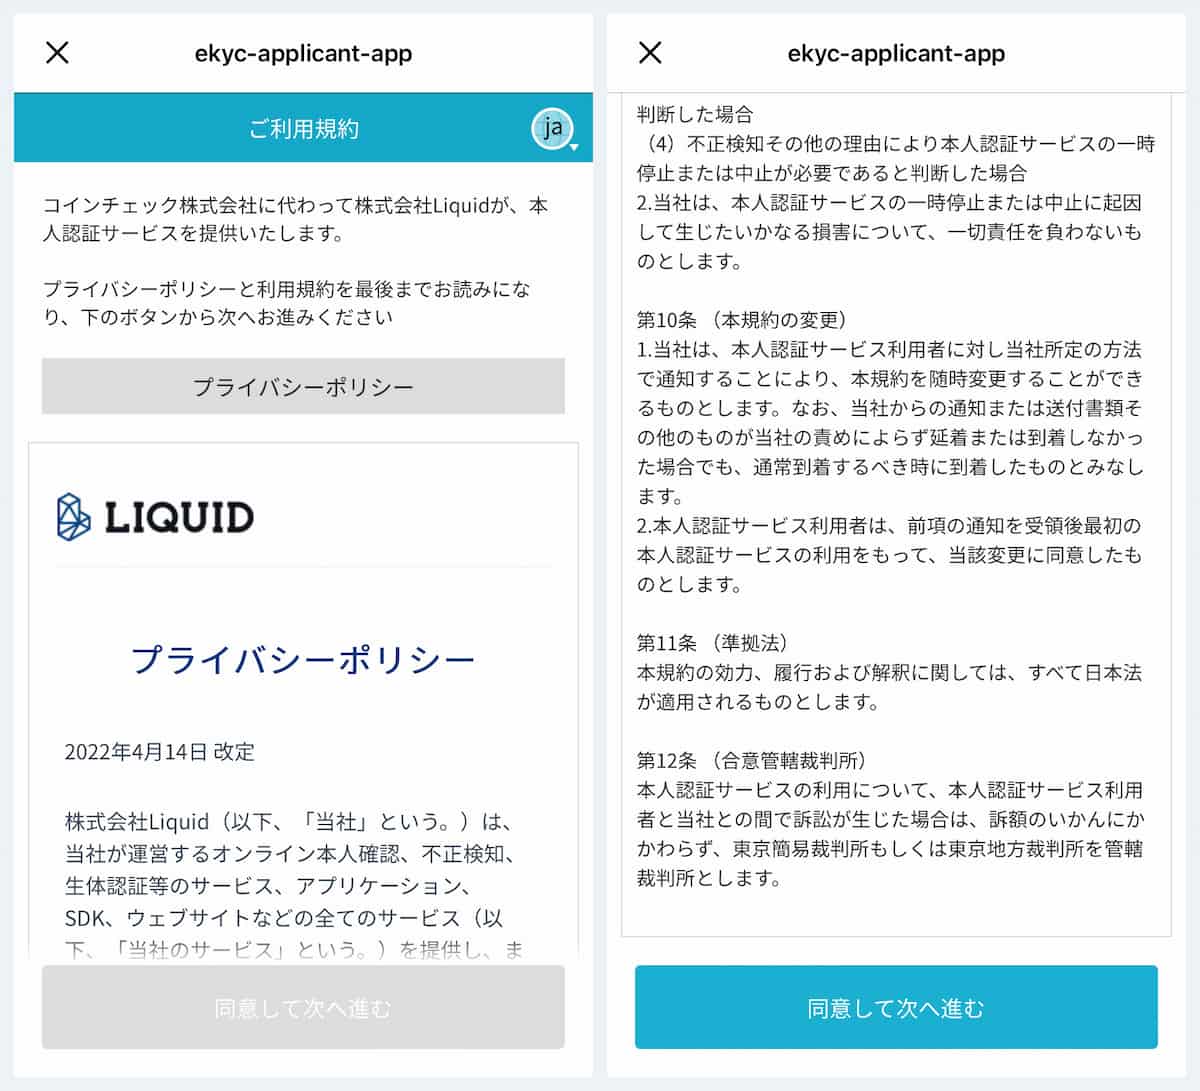 『LIQUID社』の本人認証システム